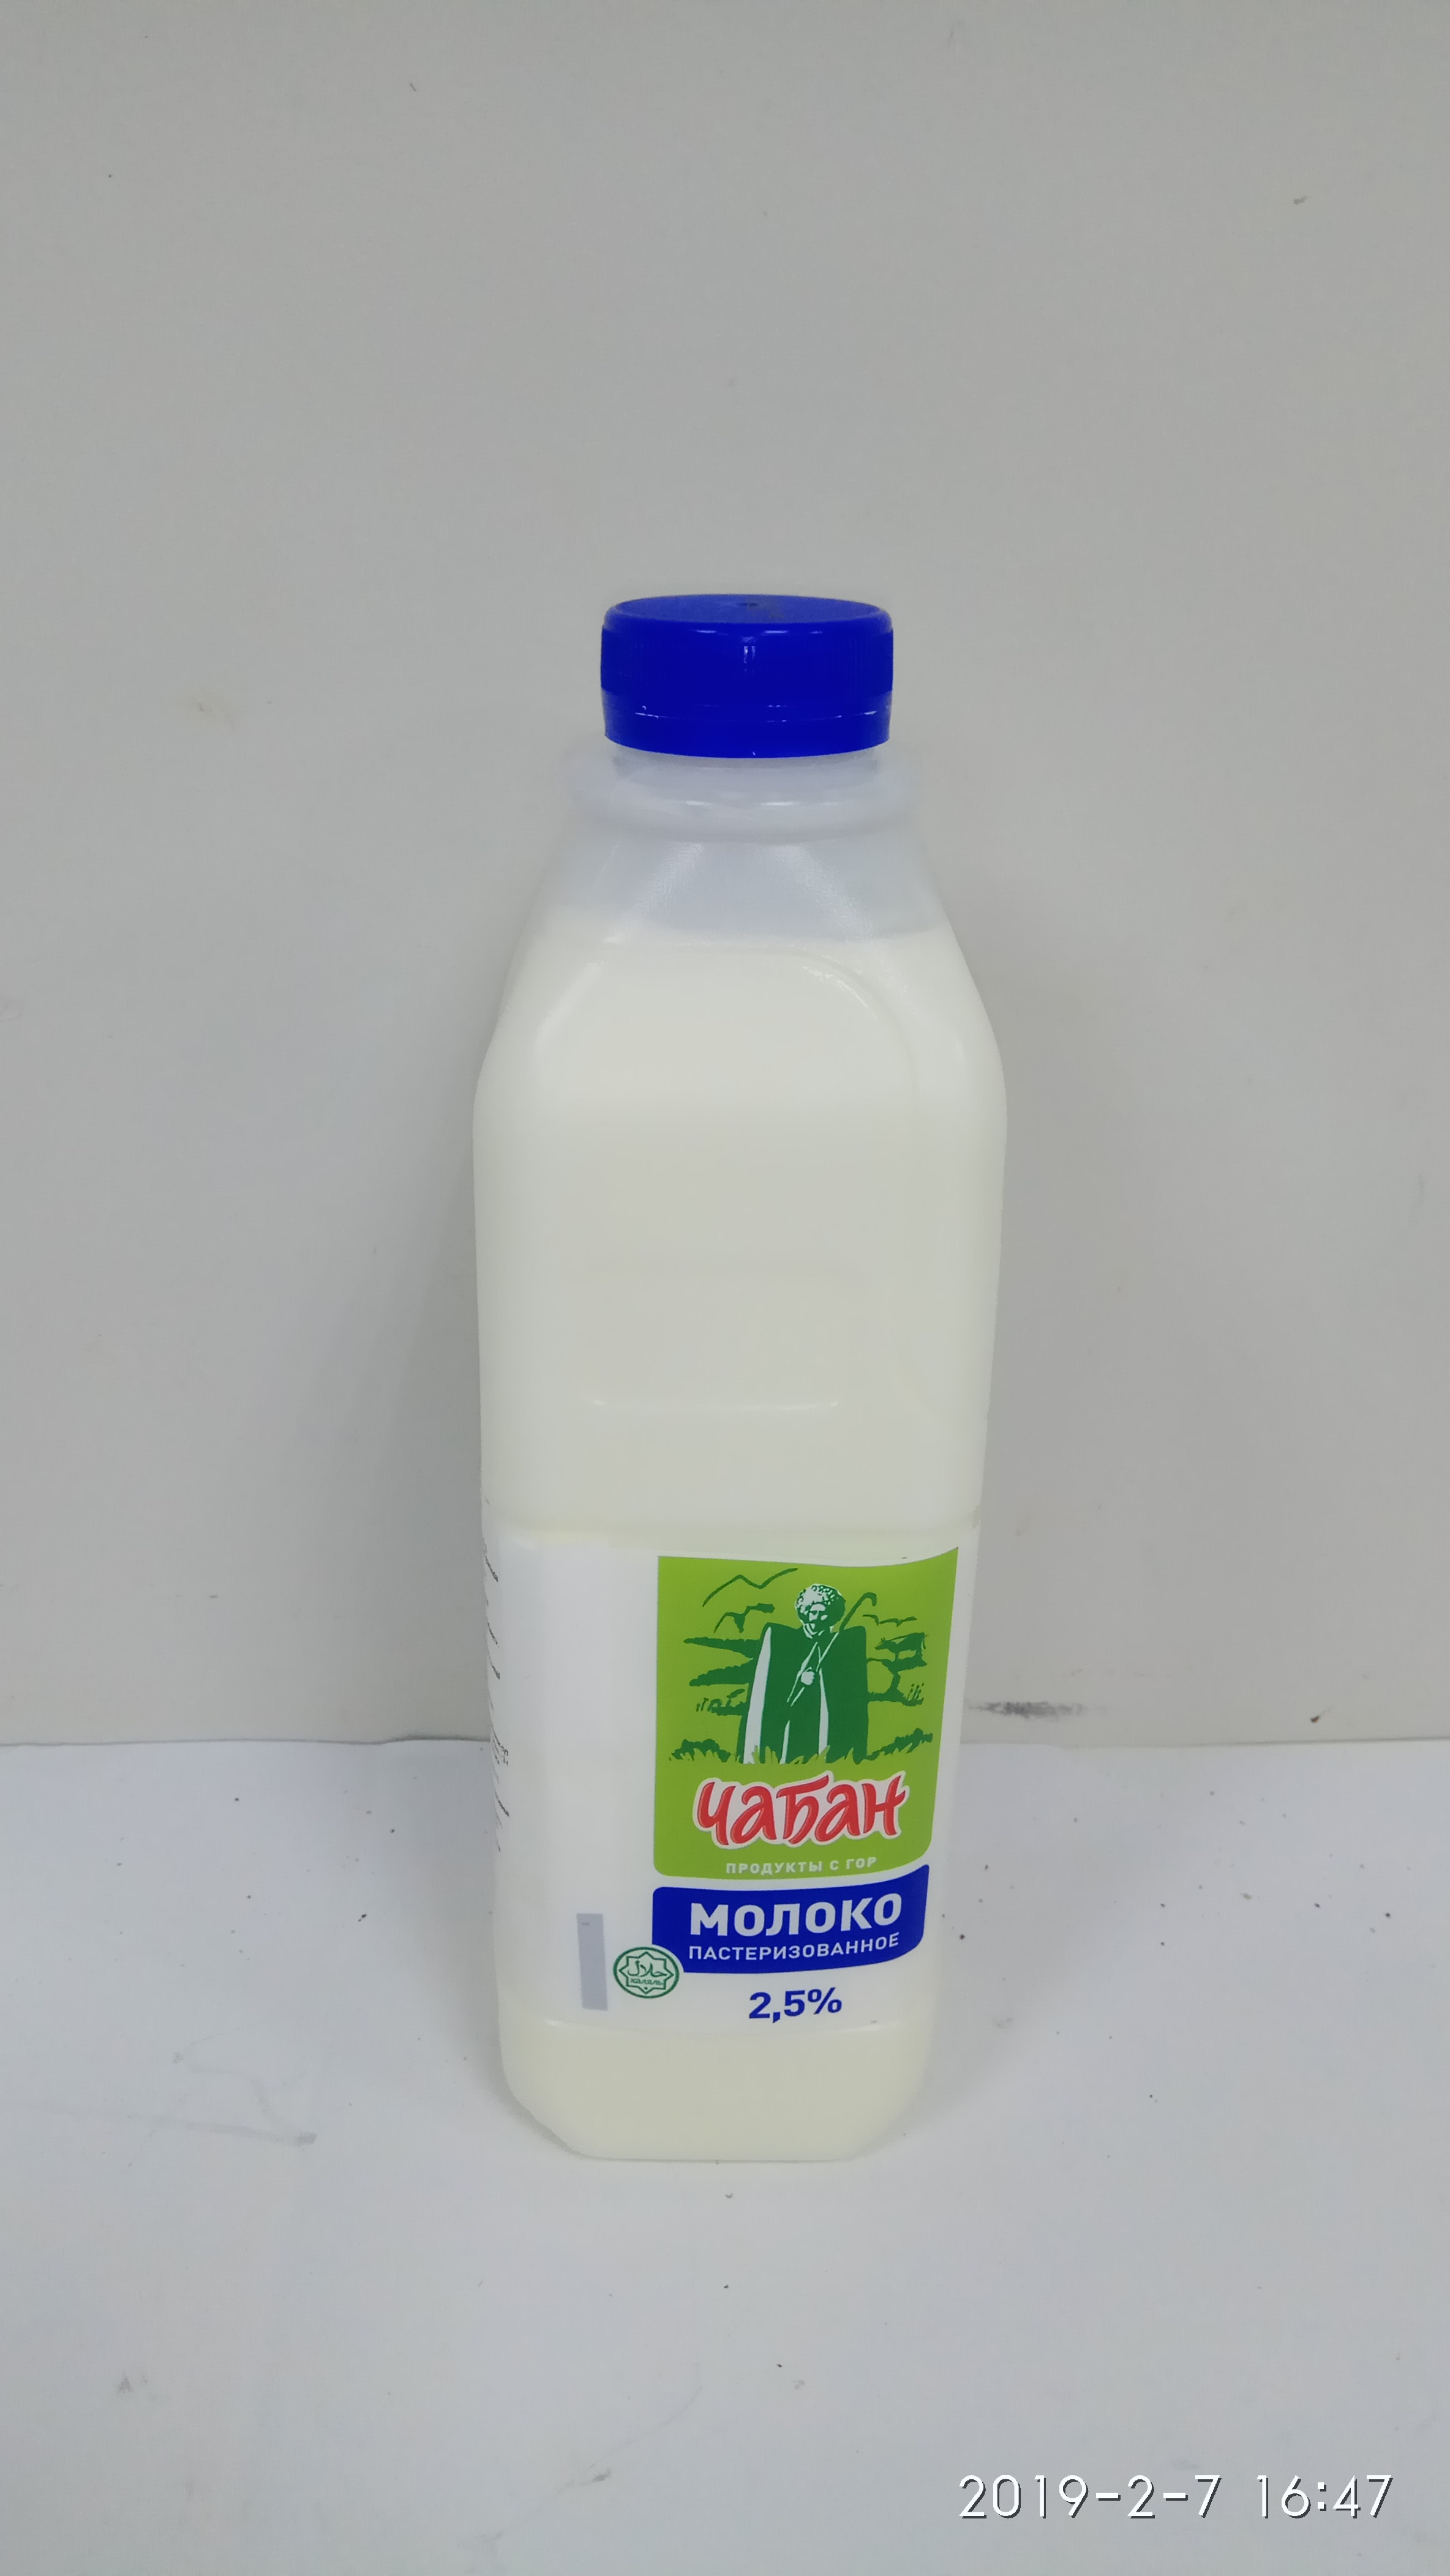 Молоко Чабан 2,5%,1л.